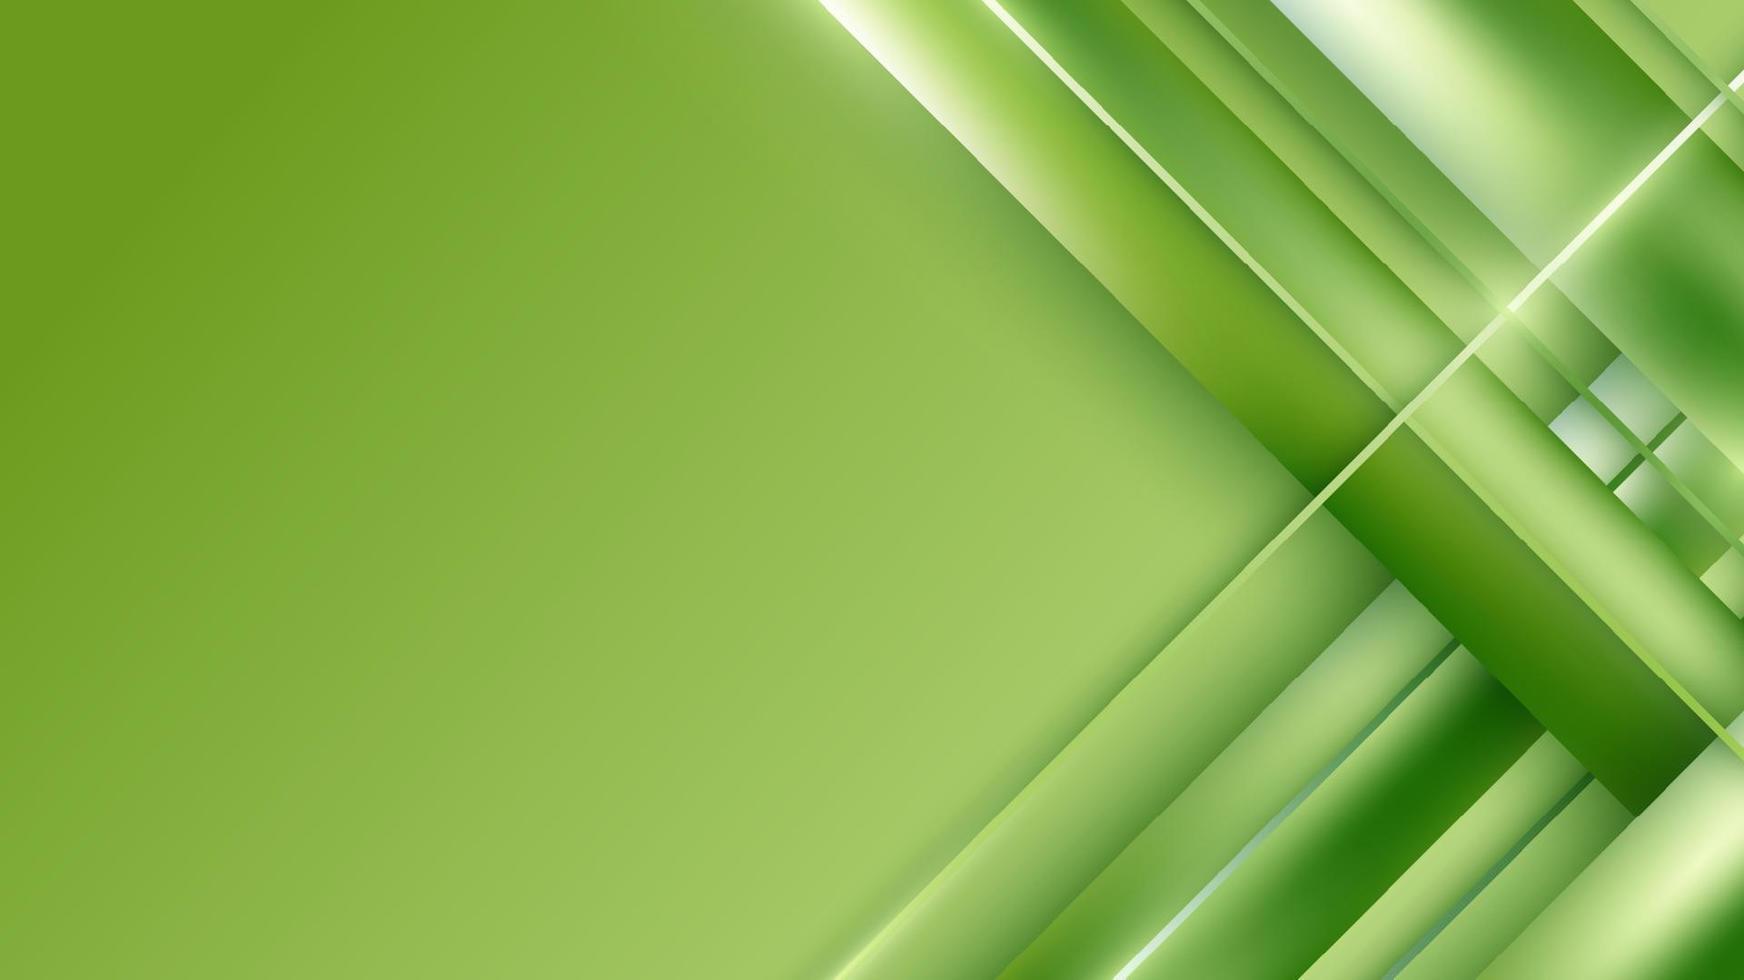 banner web modelo abstrato listras diagonais verdes e linhas tece sobre fundo verde vetor